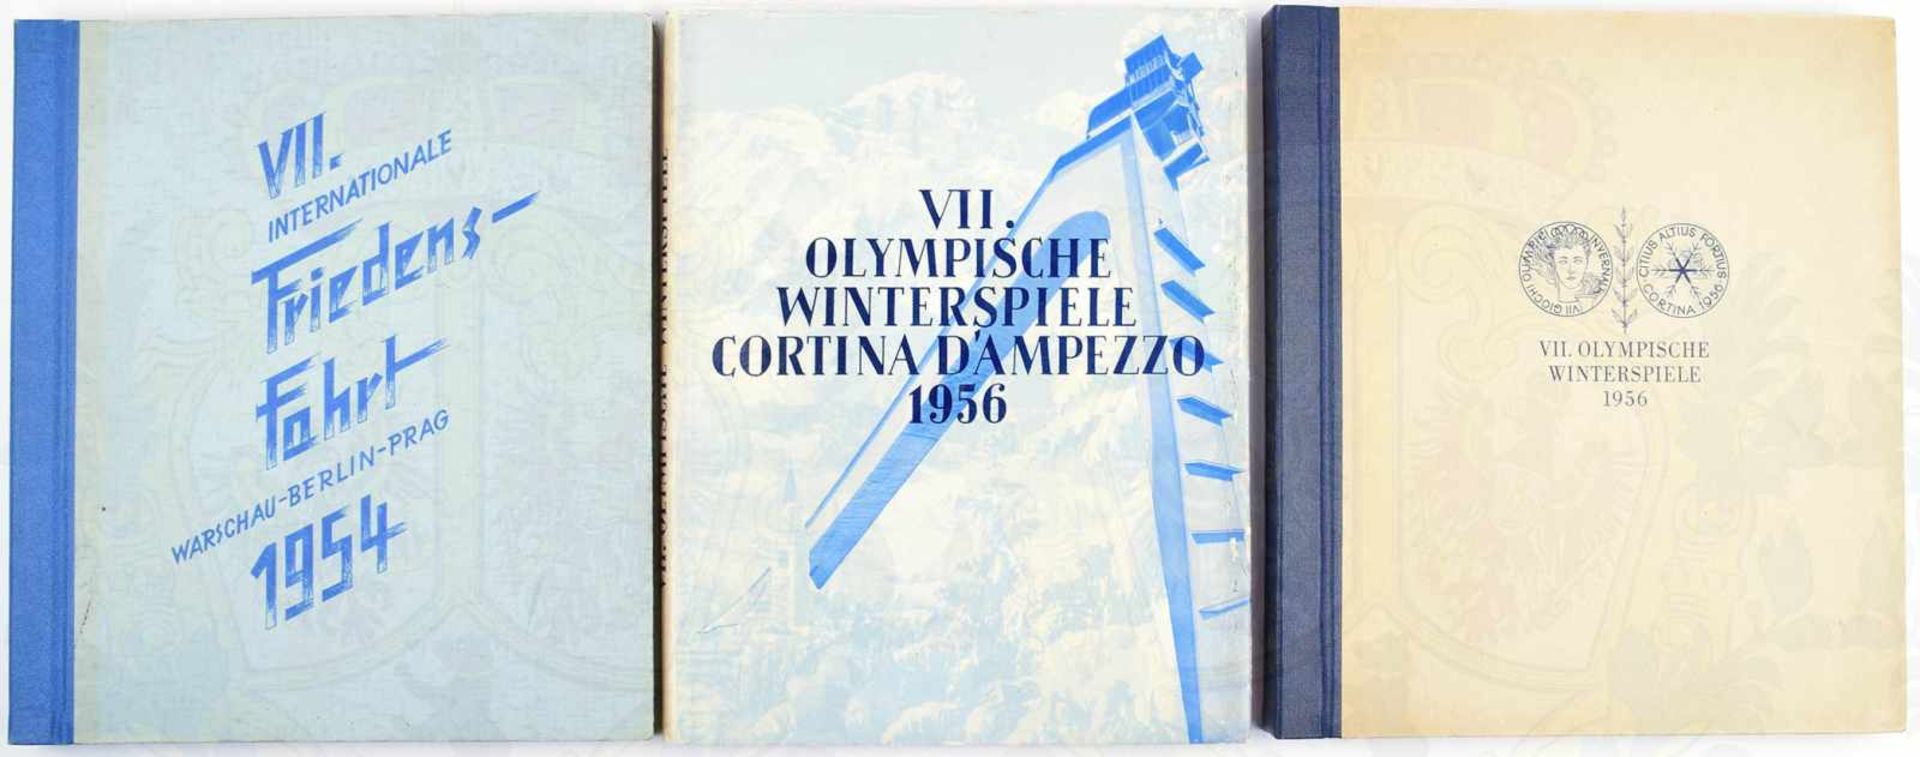 2 ALBEN, VII. Olymp. Winterspiele 1956; VII. Internation. Friedensfahrt Warschau - Berlin - Prag